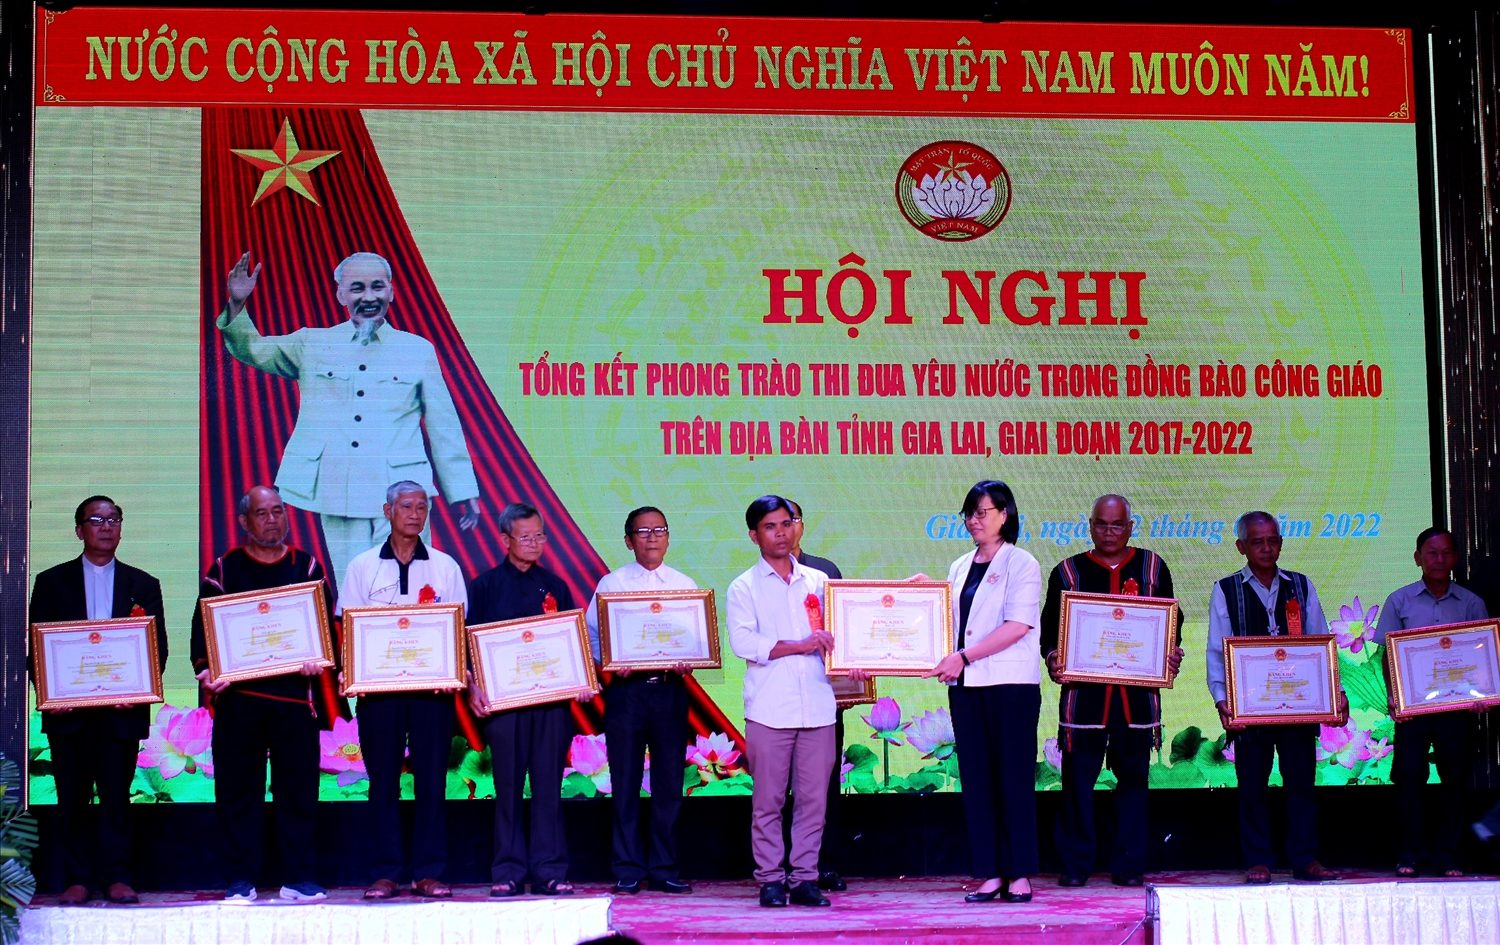 UBND tỉnh Gia Lai và Ủy ban MTTQ Việt Nam tỉnh Gia Lai đã tặng bằng khen cho 75 cá nhân đã có thành tích xuất sắc trong phong trào thi đua yêu nước trên địa bàn tỉnh giai đoạn 2017-2022